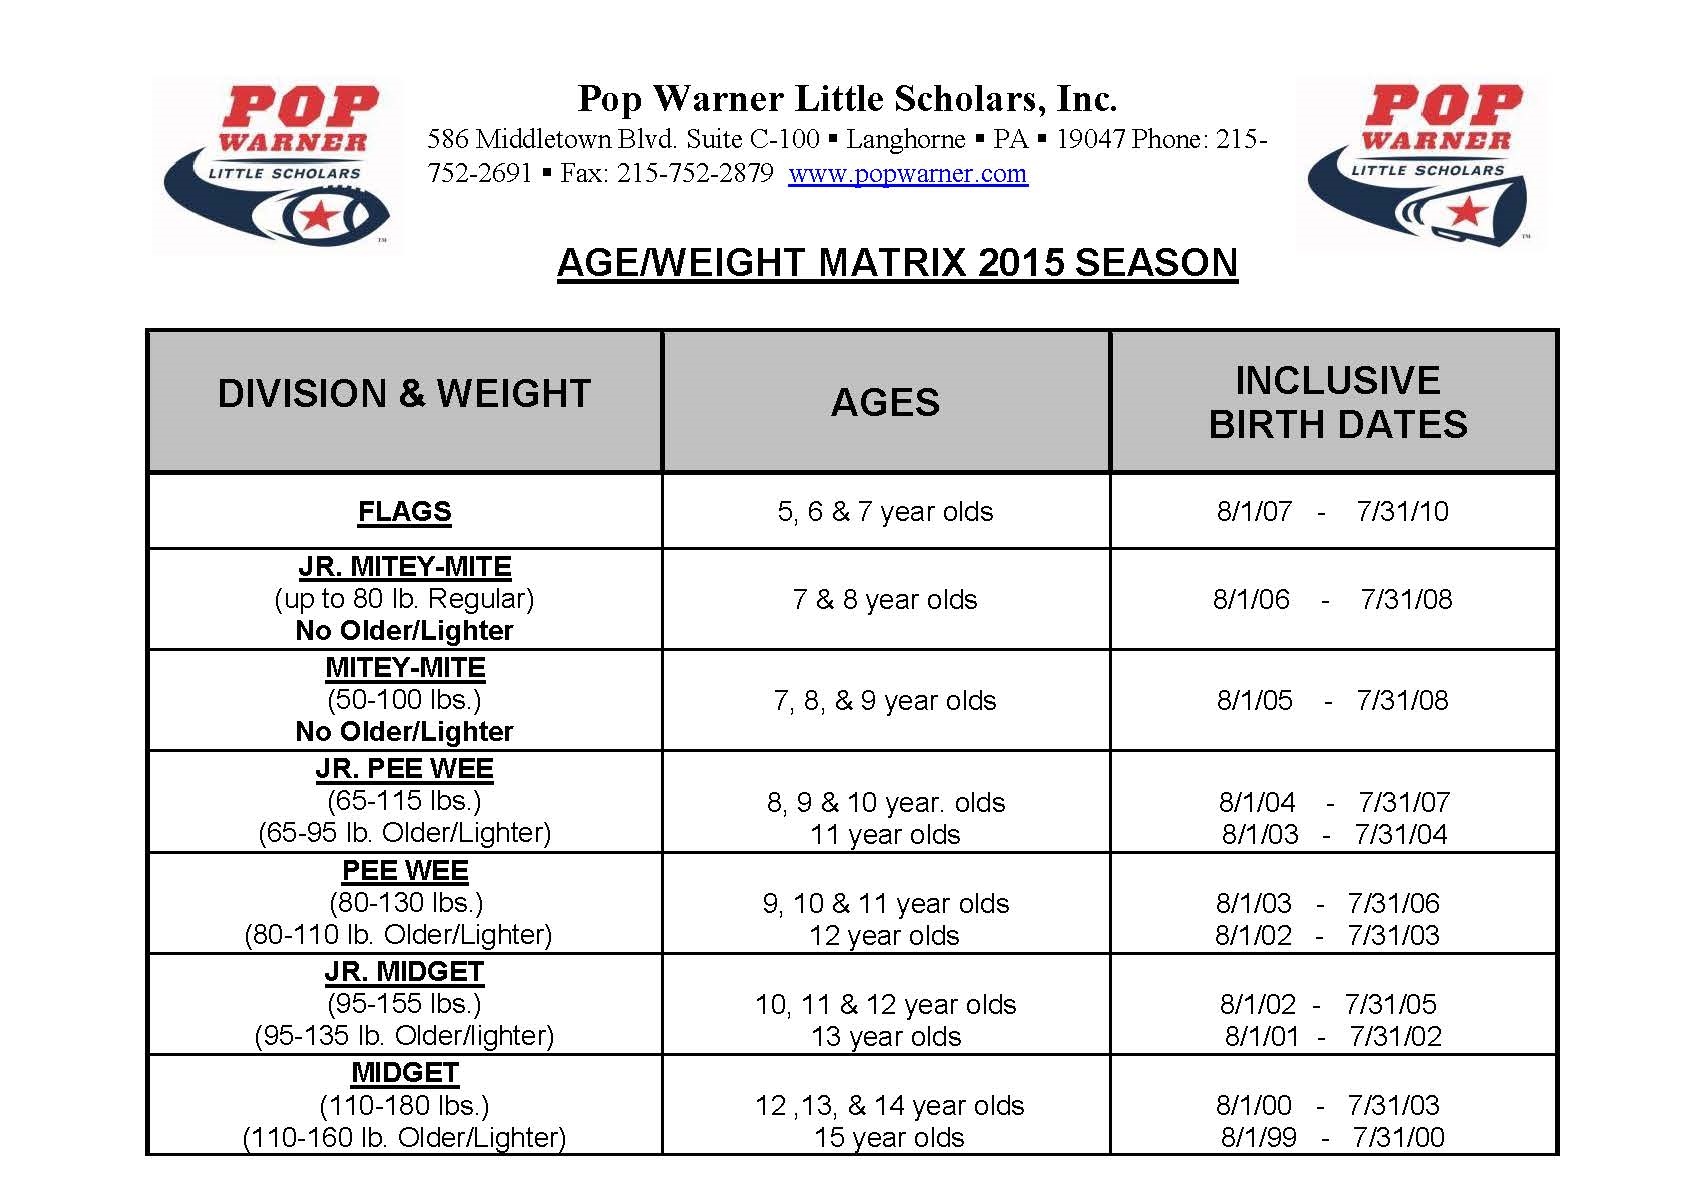 Pop Warner Age and Weight Matrix